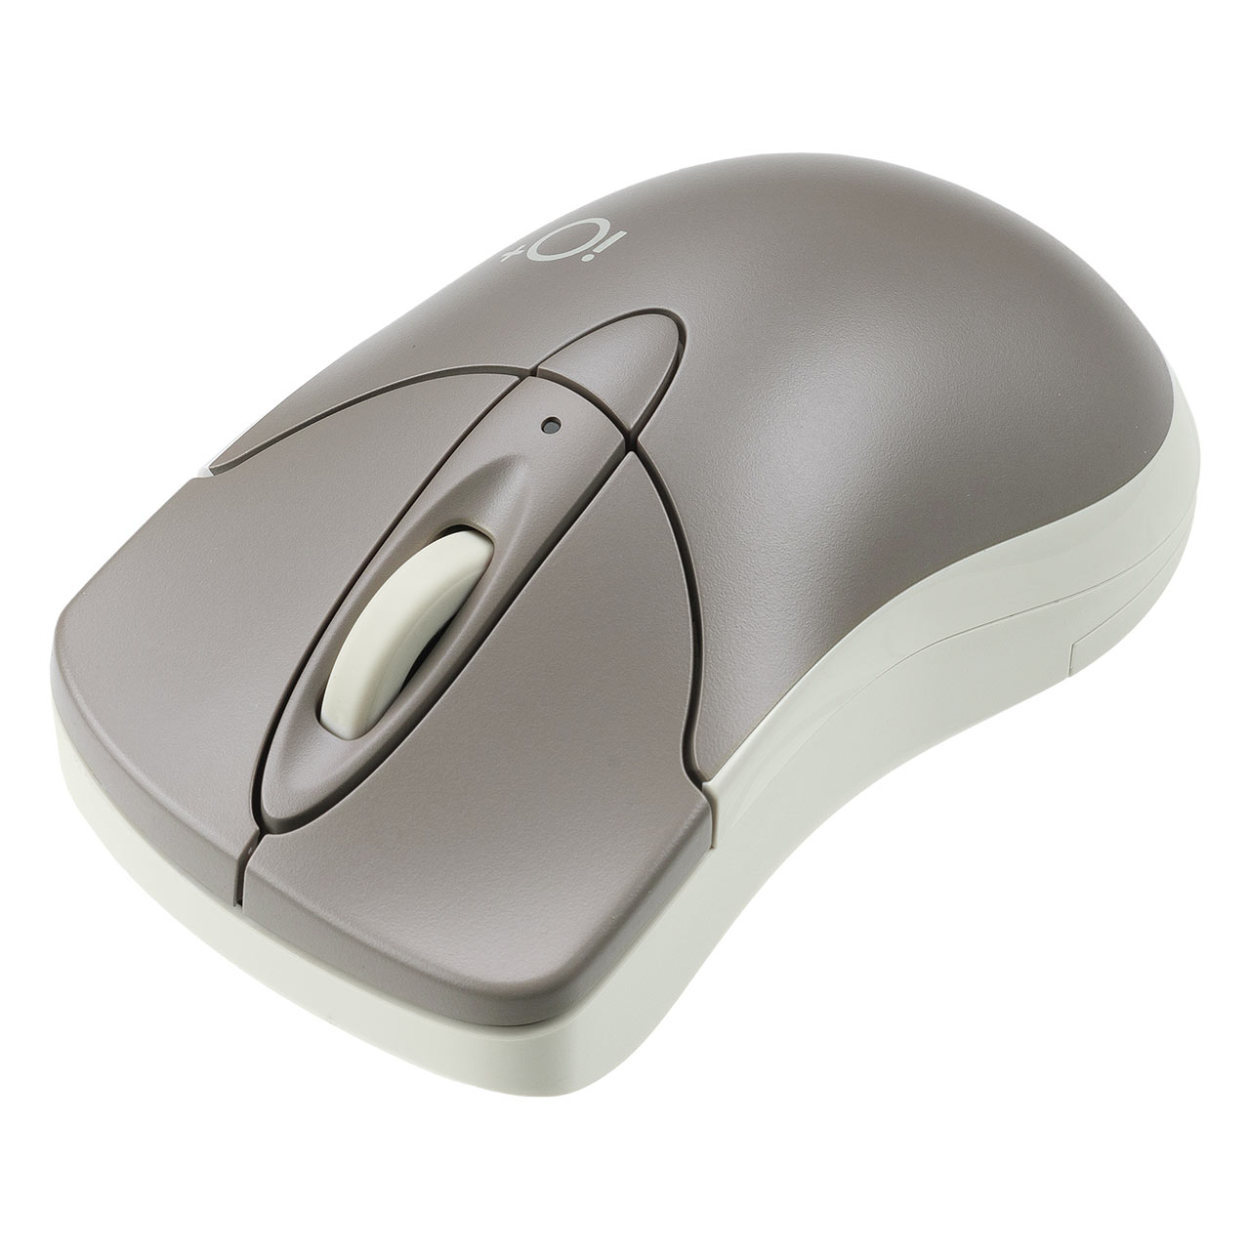 マウス Bluetooth ワイヤレス 無線 静音 マルチペアリング 小型 コンパクト カウント切り...